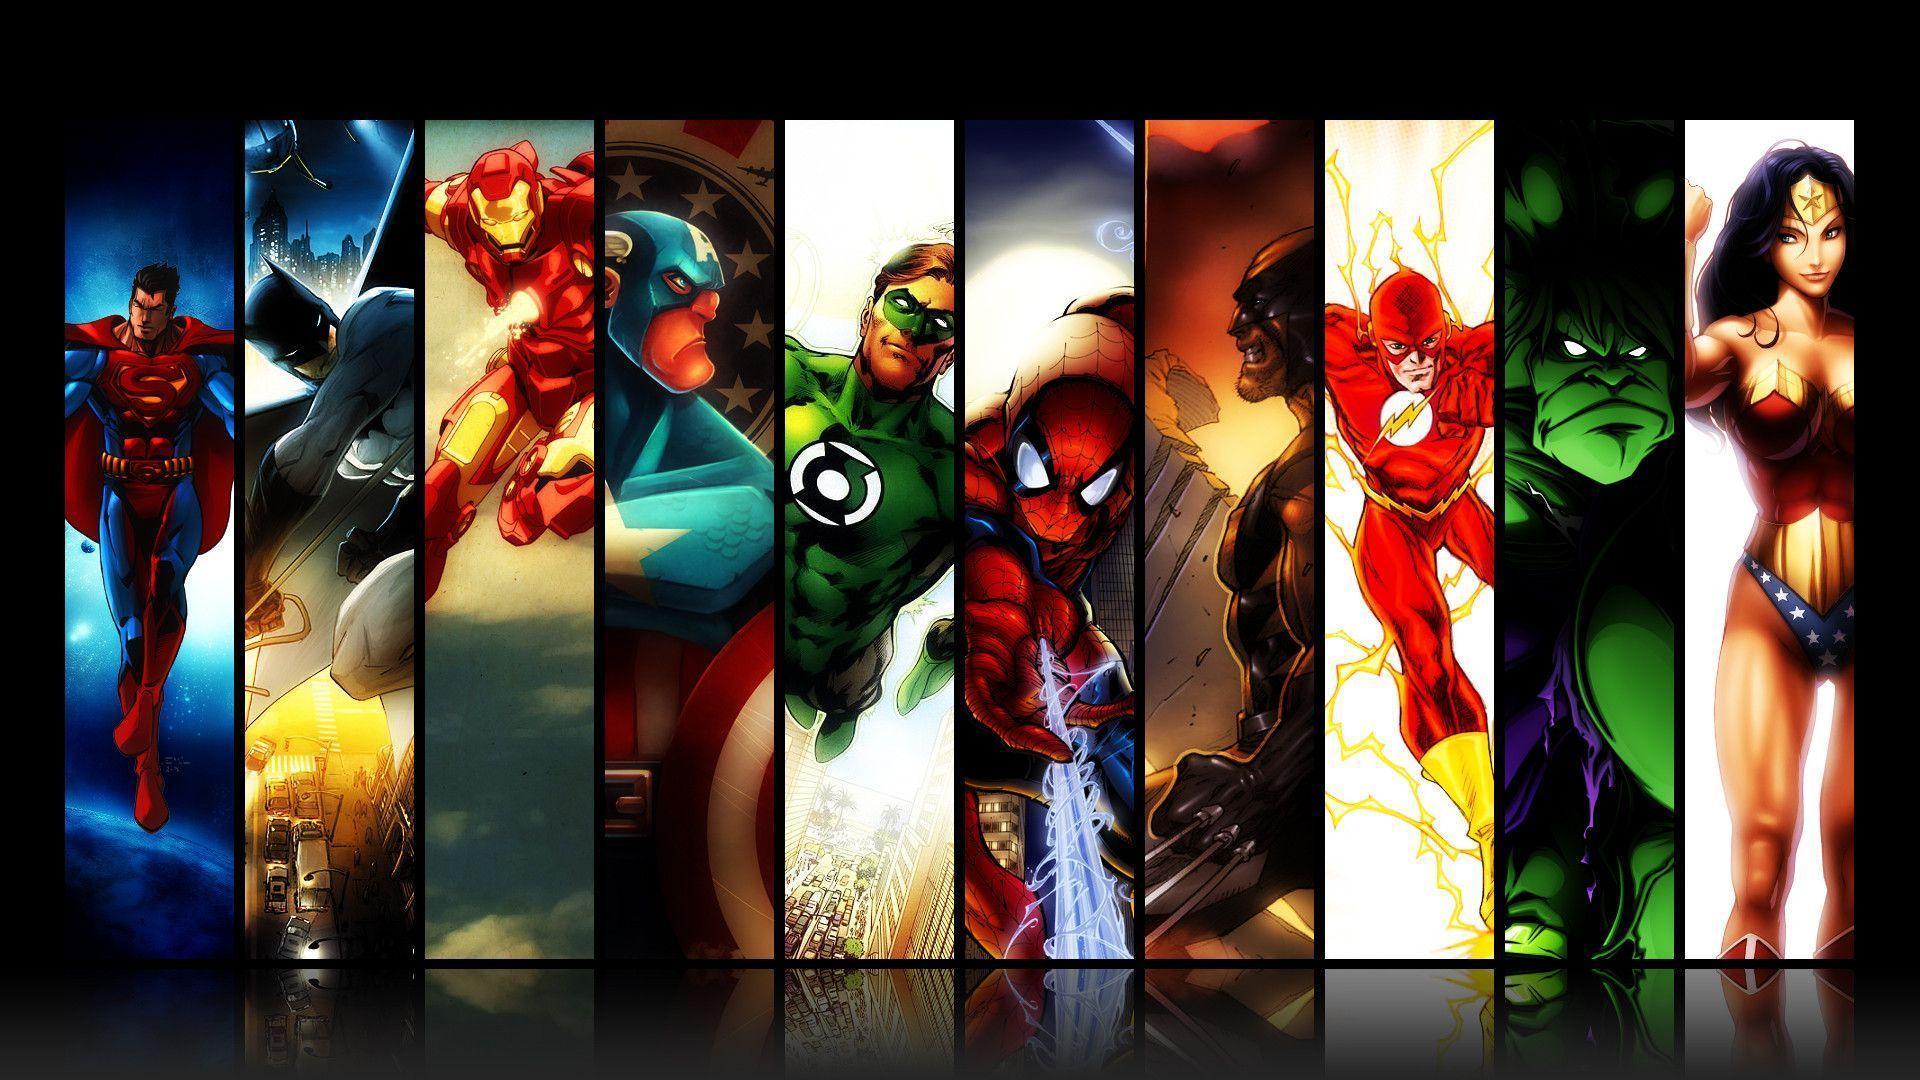 Superhero Wallpaper. Superhero iPhone Wallpaper, Superhero Phone Wallpaper and Awesome Superhero Background